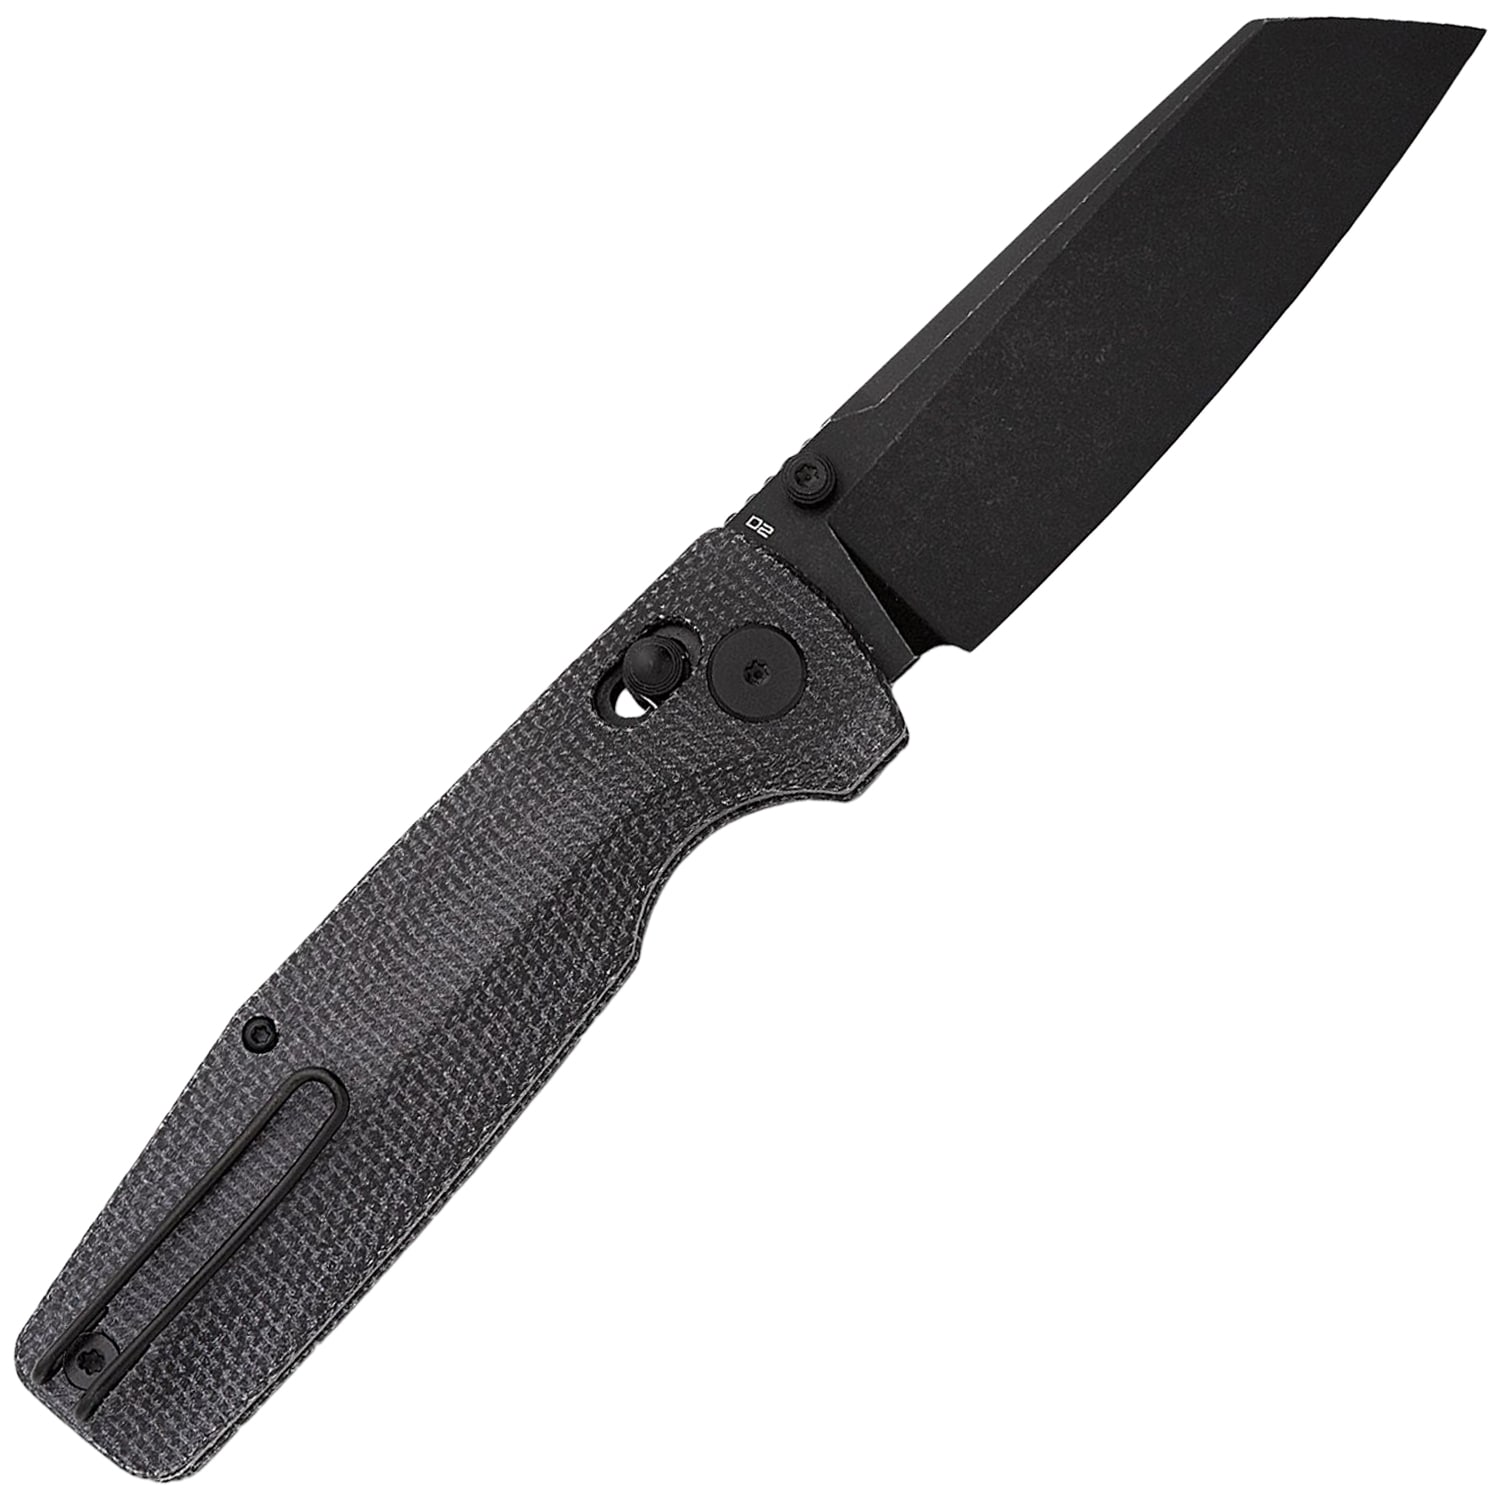 Nóż składany Bestech Knives Slasher Black - Black